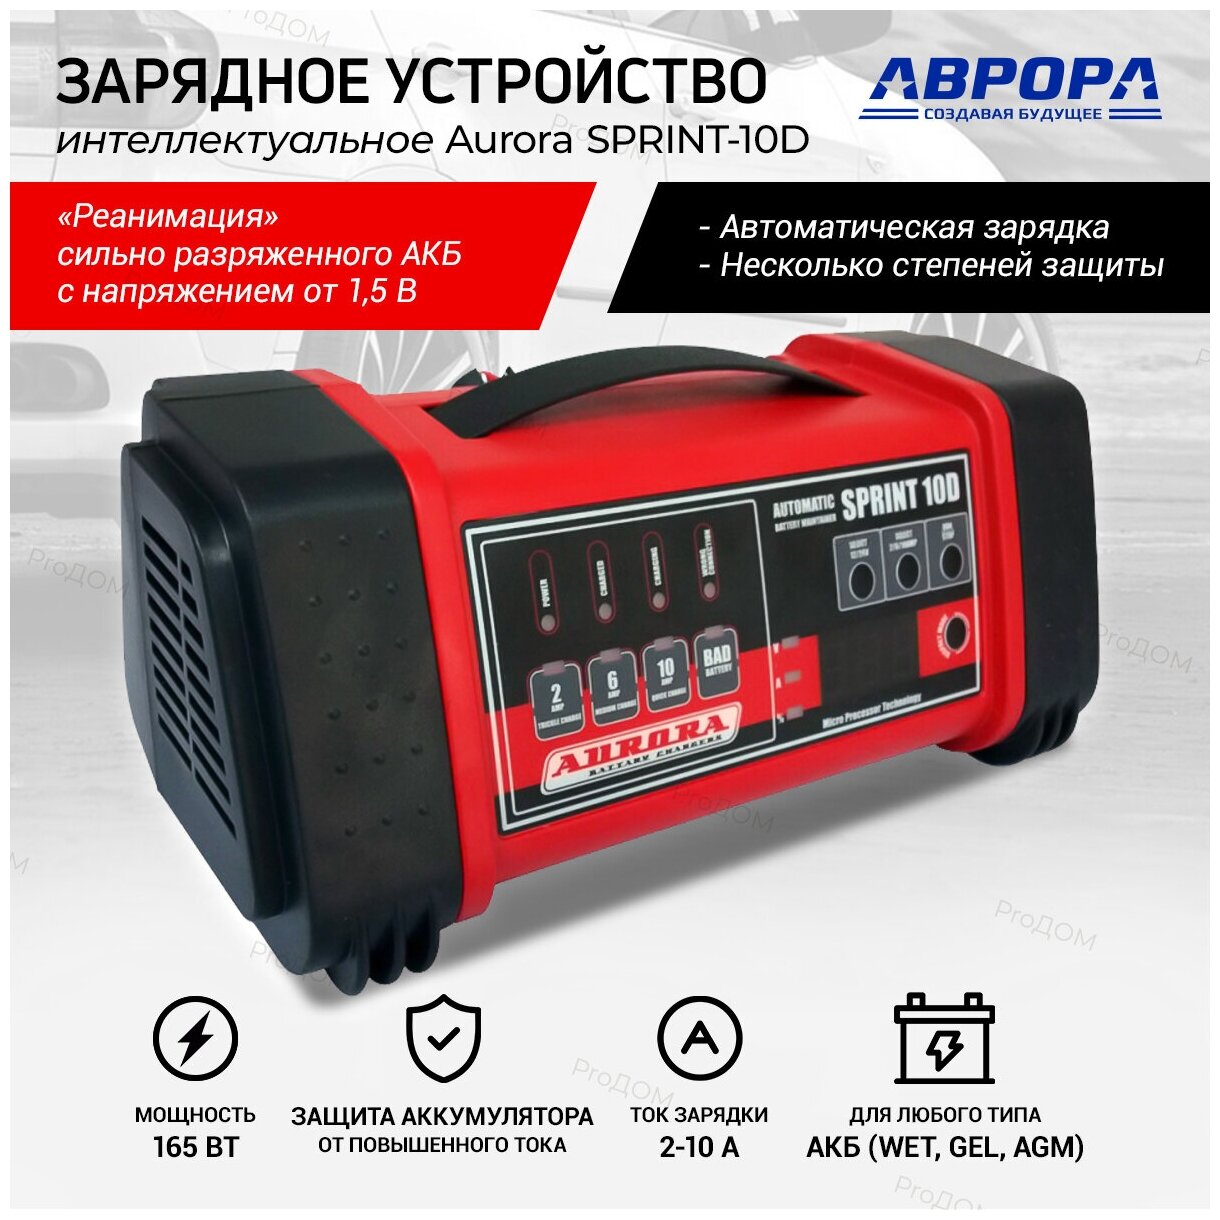 Зарядное устройство Aurora SPRINT 10 D automatic 12/24В